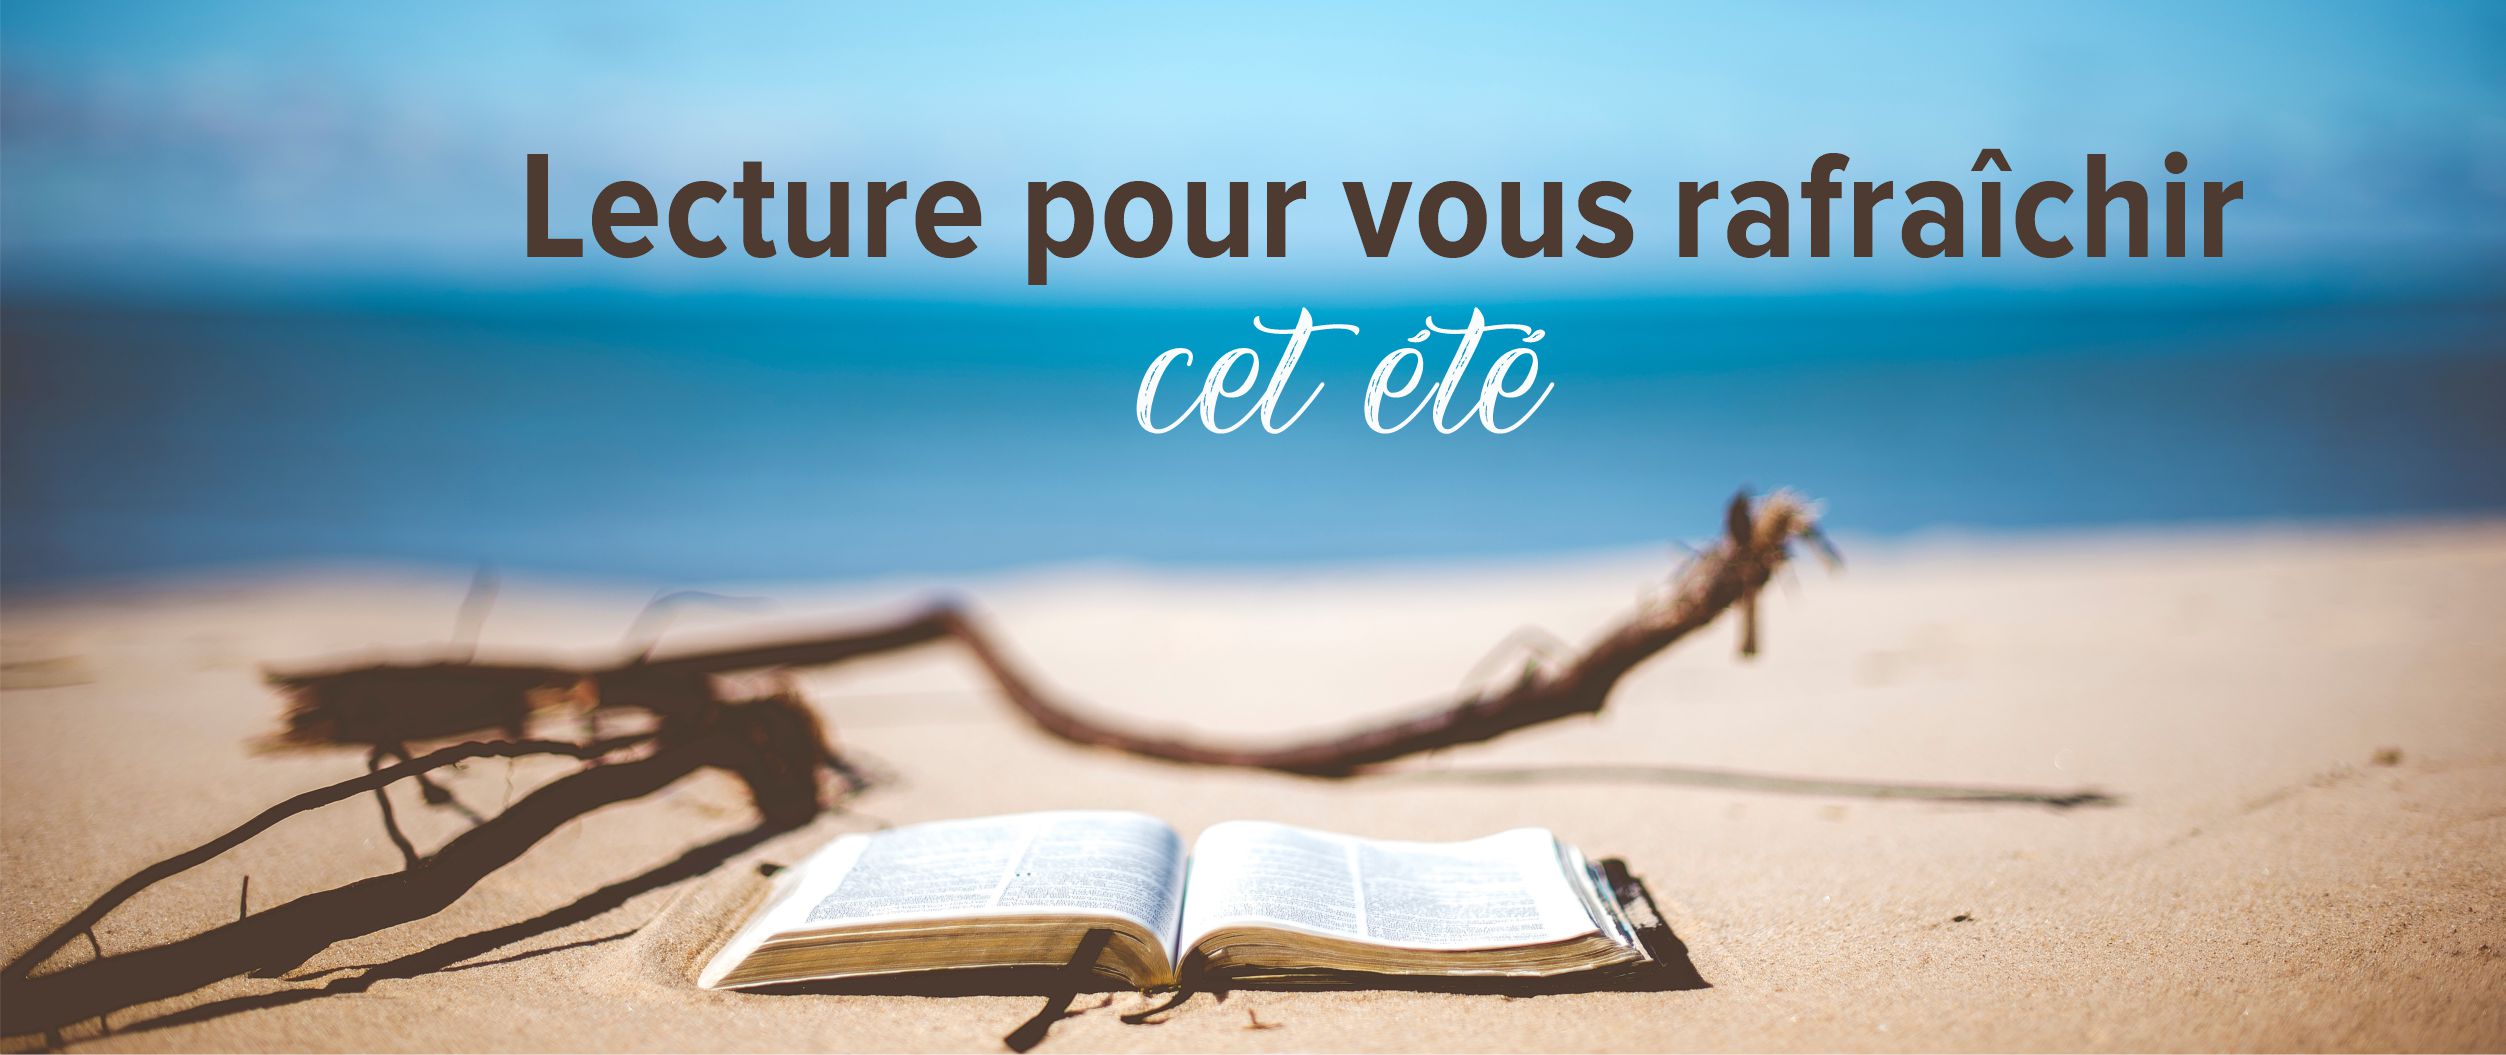 Lecture_pour_vous_rafraichir_06-22